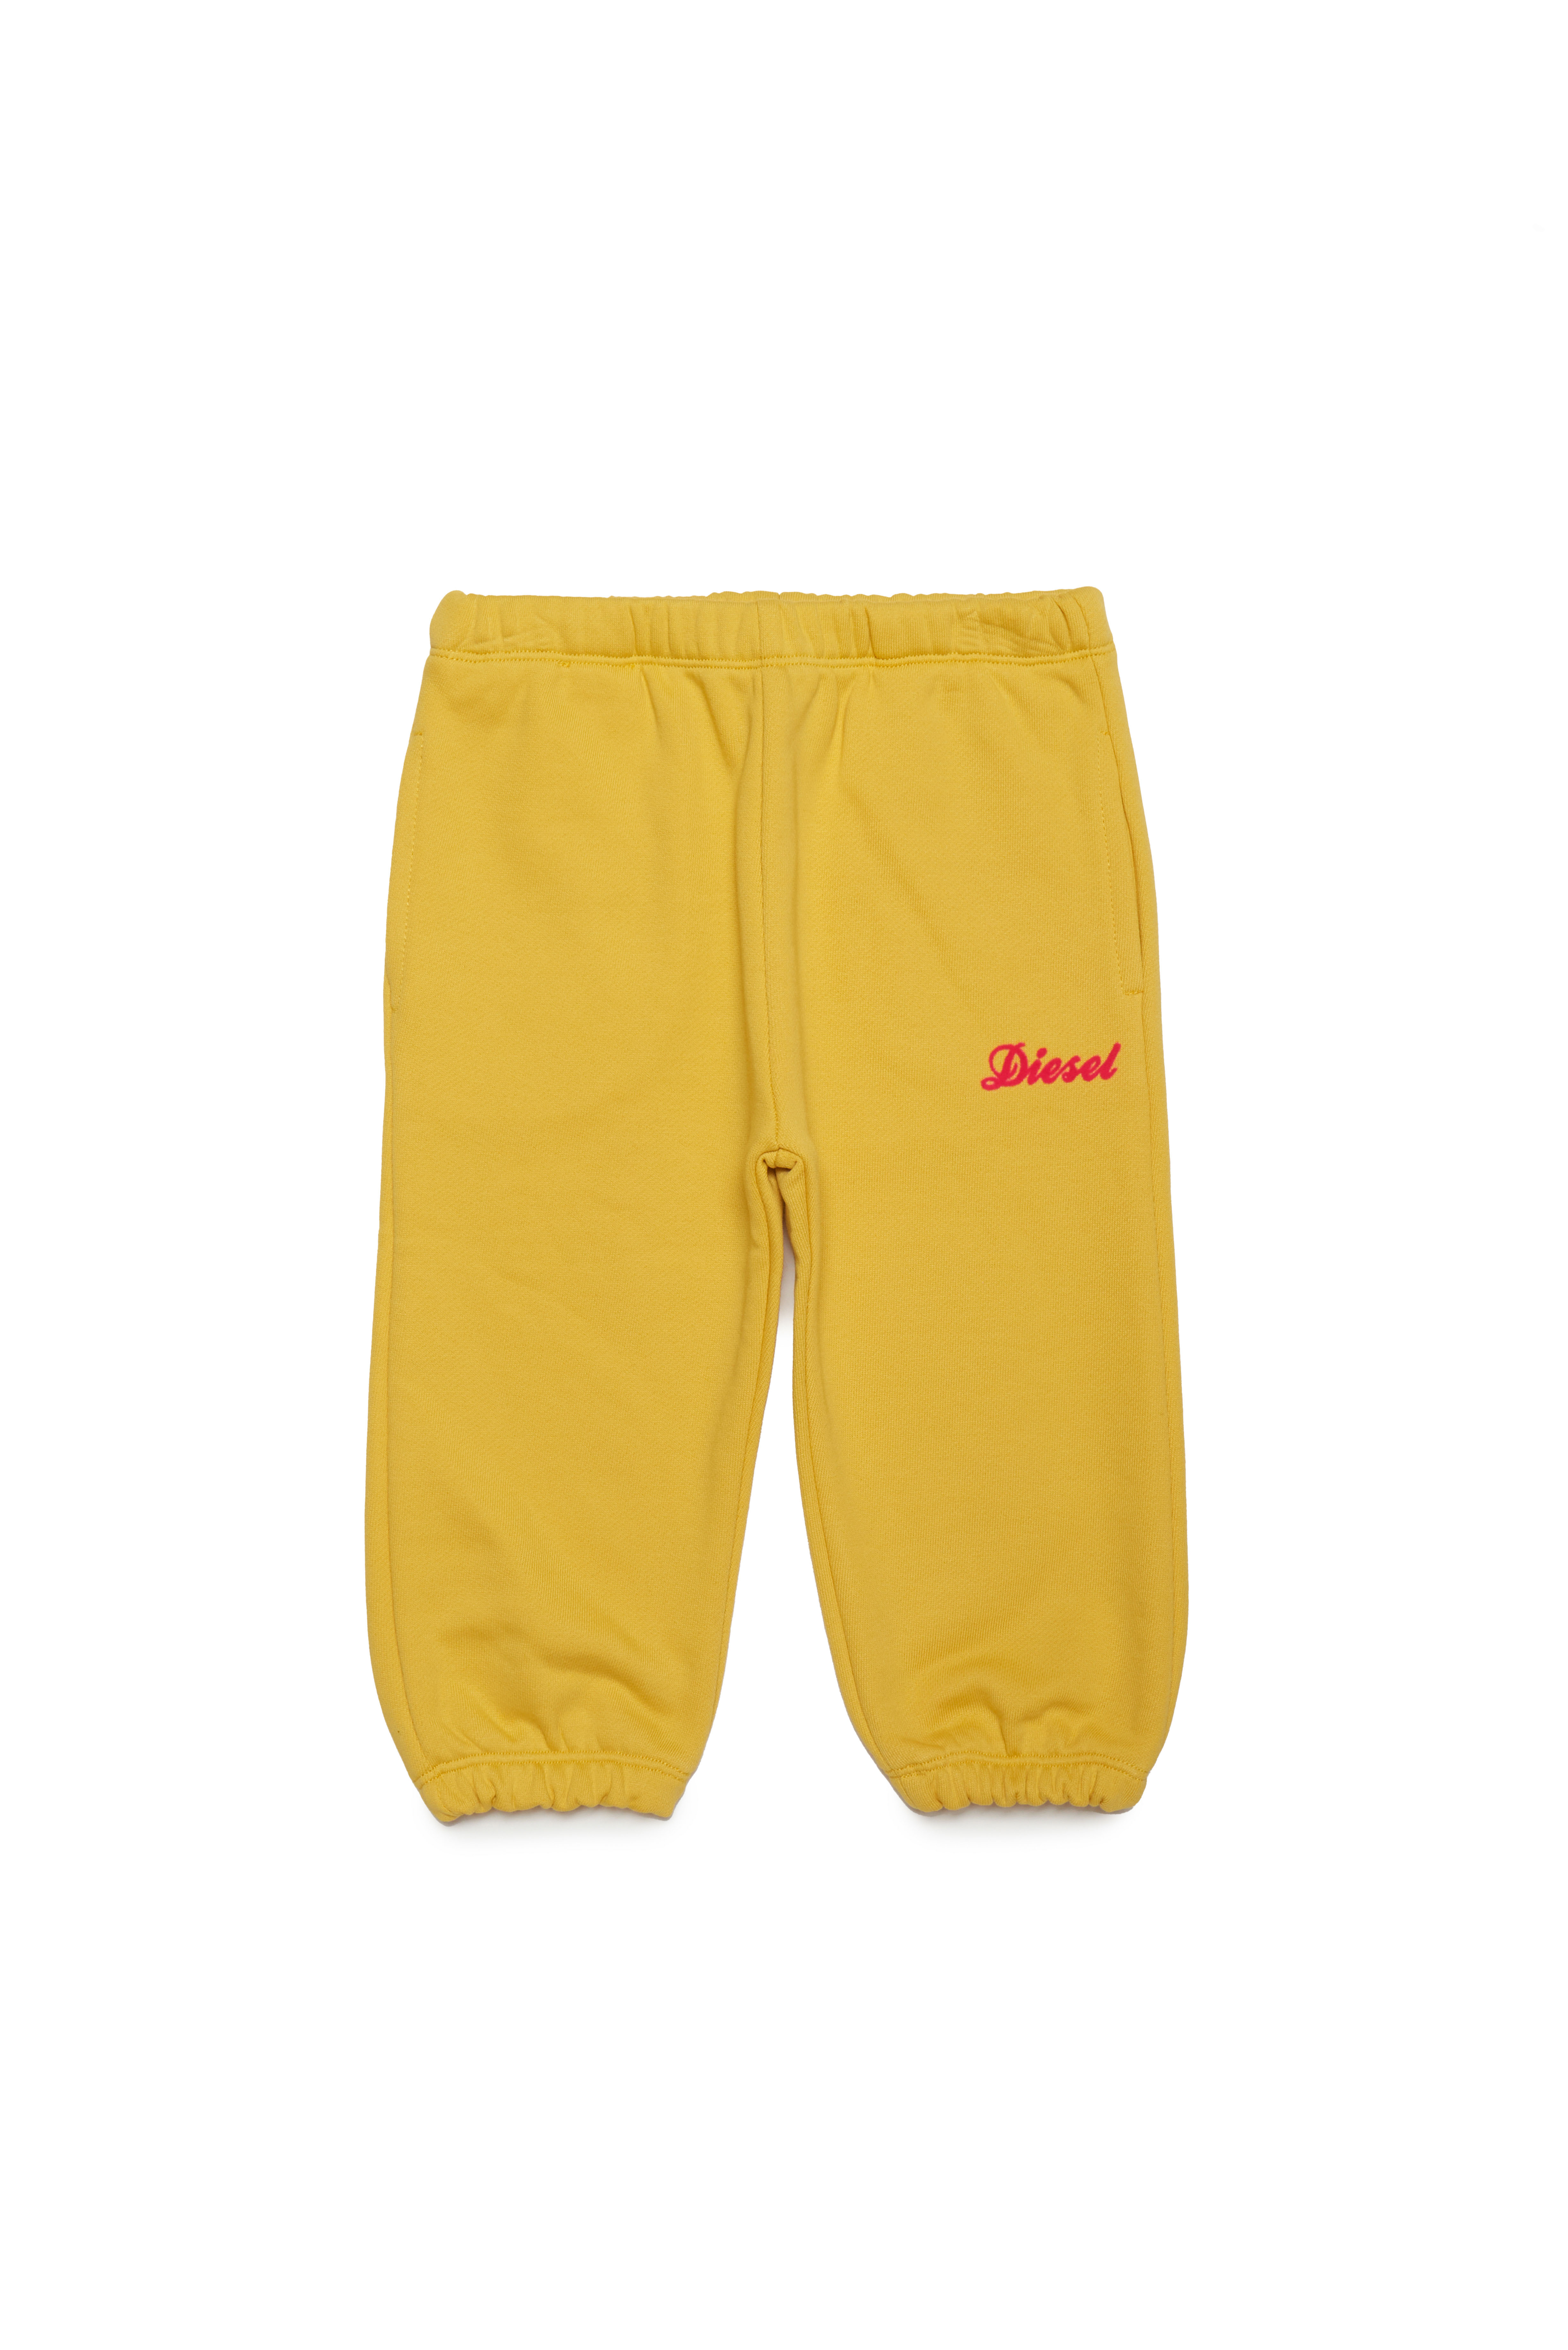 Diesel - Pantalones deportivos con logotipo Diesel en cursiva - Pantalones - Mujer - Amarillo